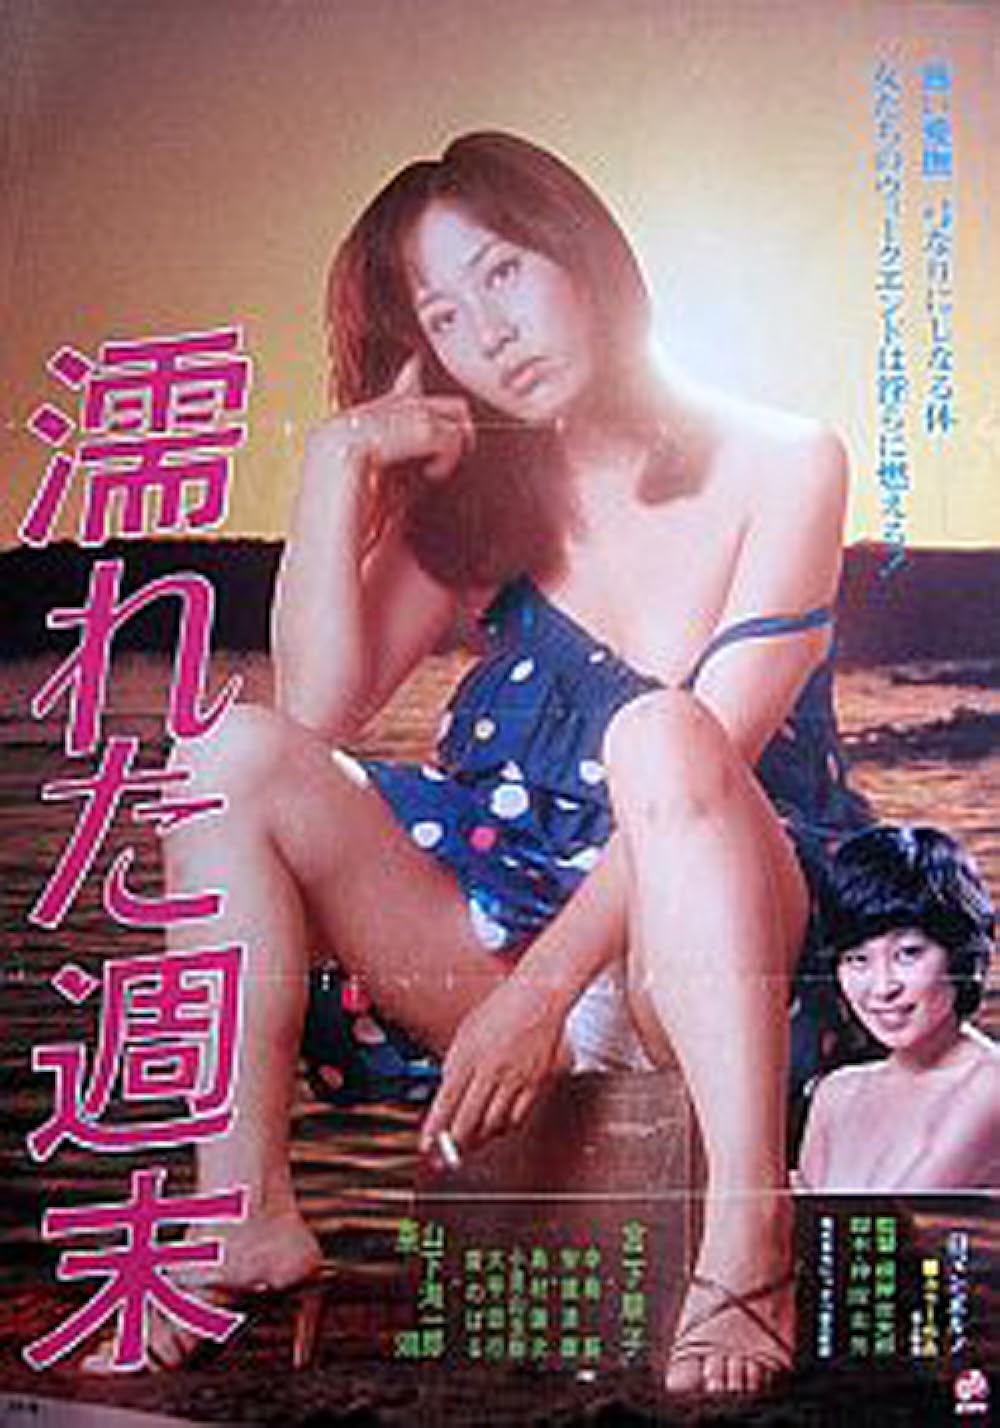 Wet Weekend (1979) 720p HDRip Japanese Adult Movie [650MB]